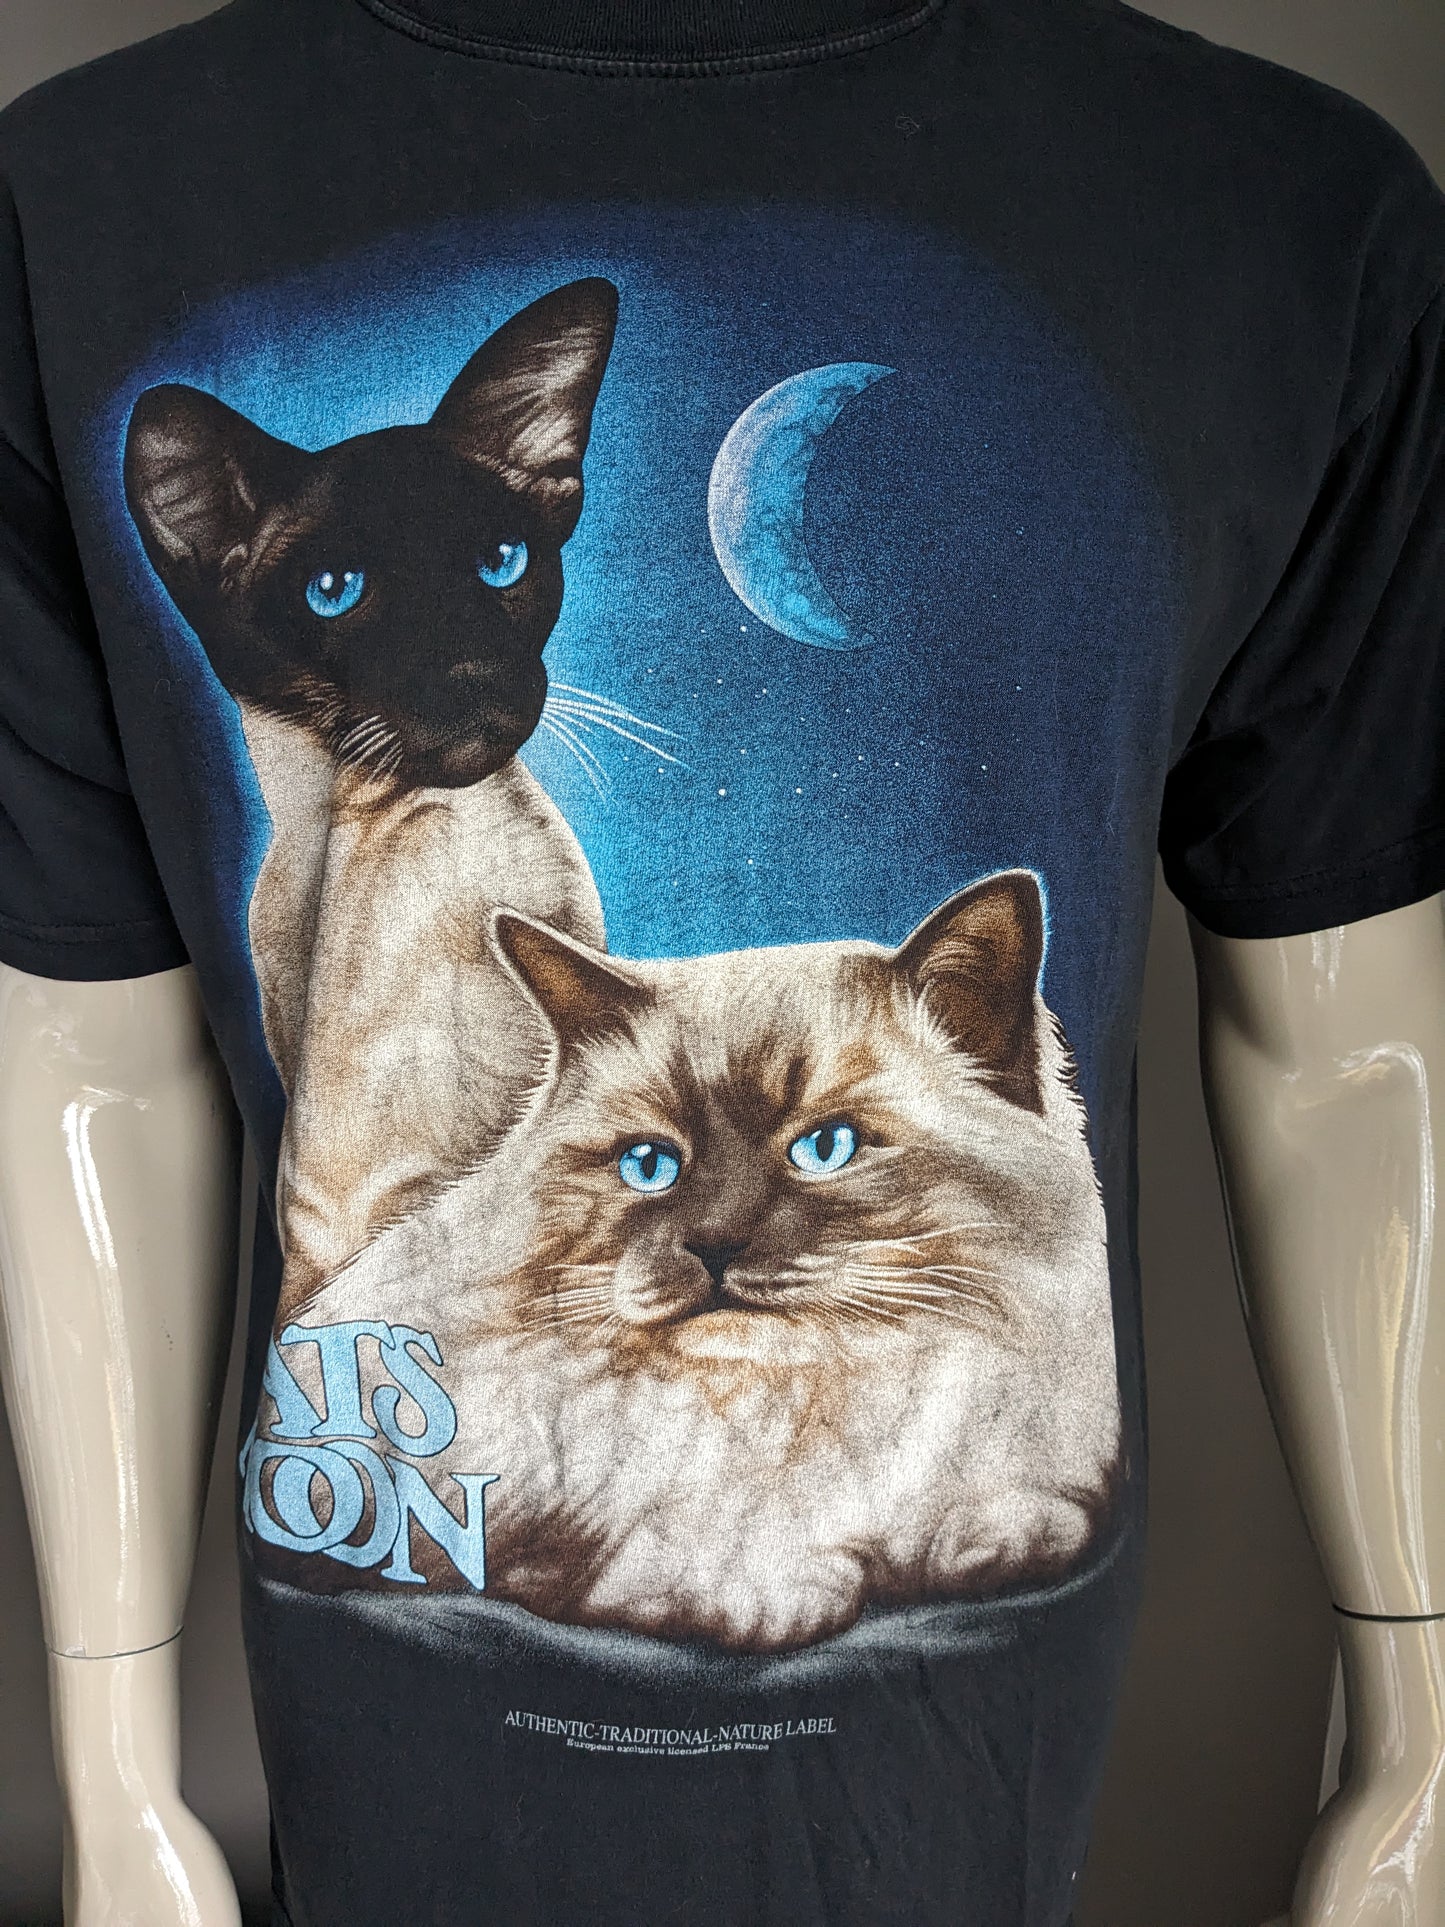 Camicia da collezione RL. "Cats Moon". Nero con stampa. Taglia L.